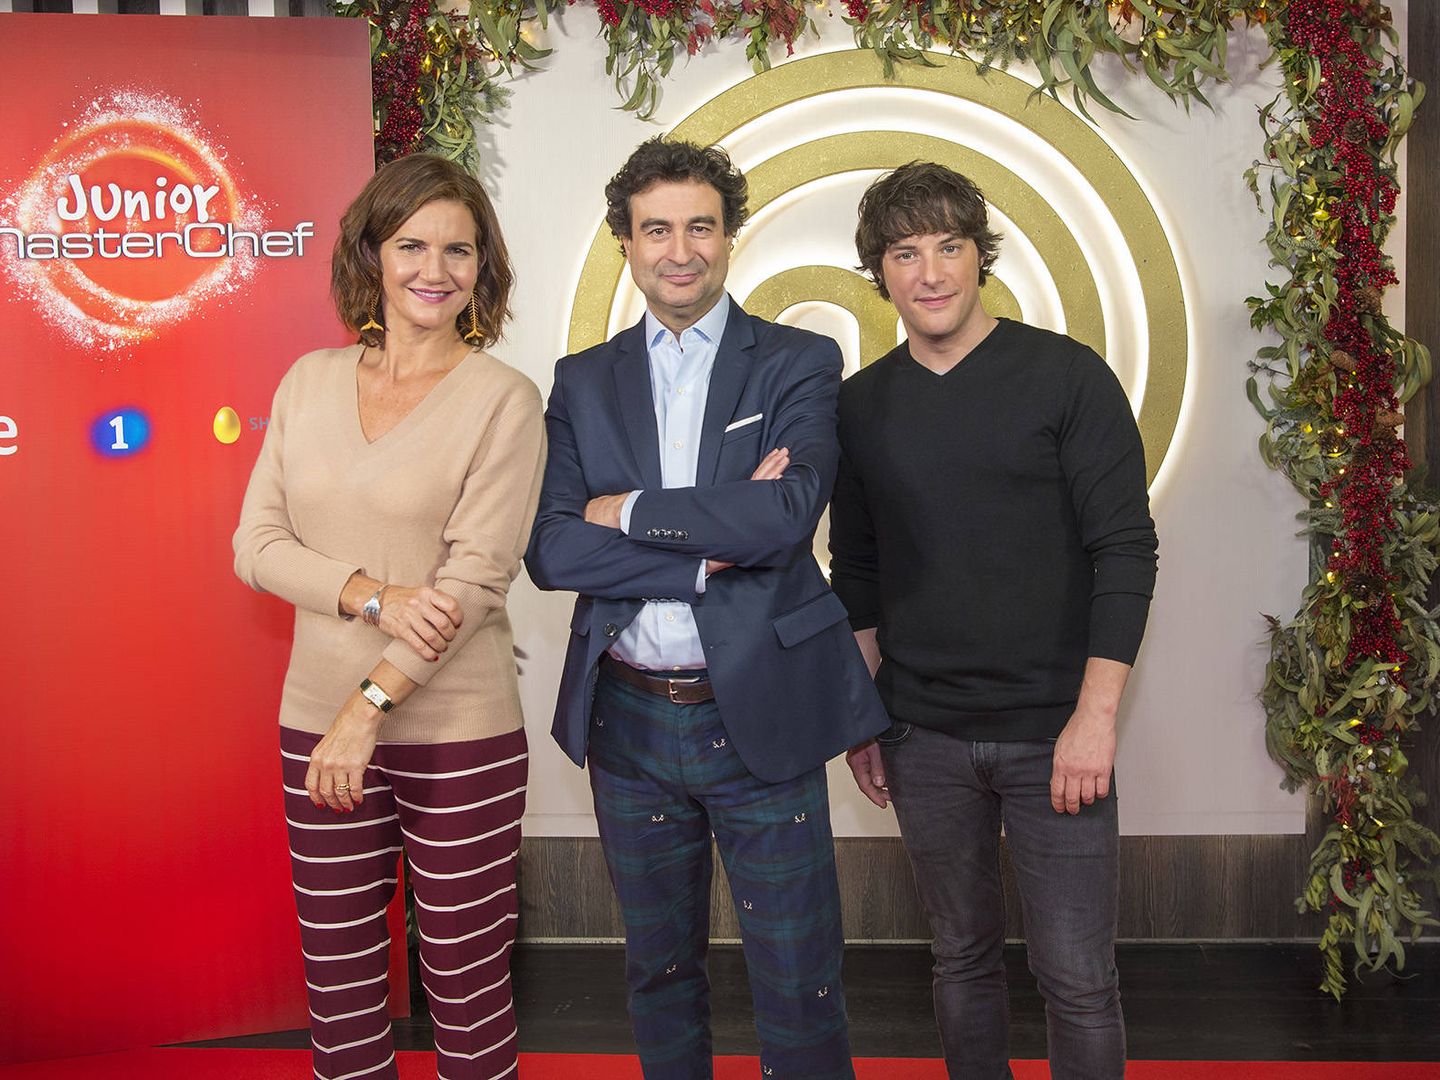 El jurado de 'MC Junior': Samanta Vallejo-Nágera, Pepe Rodríguez y Jordi Cruz. (RTVE)